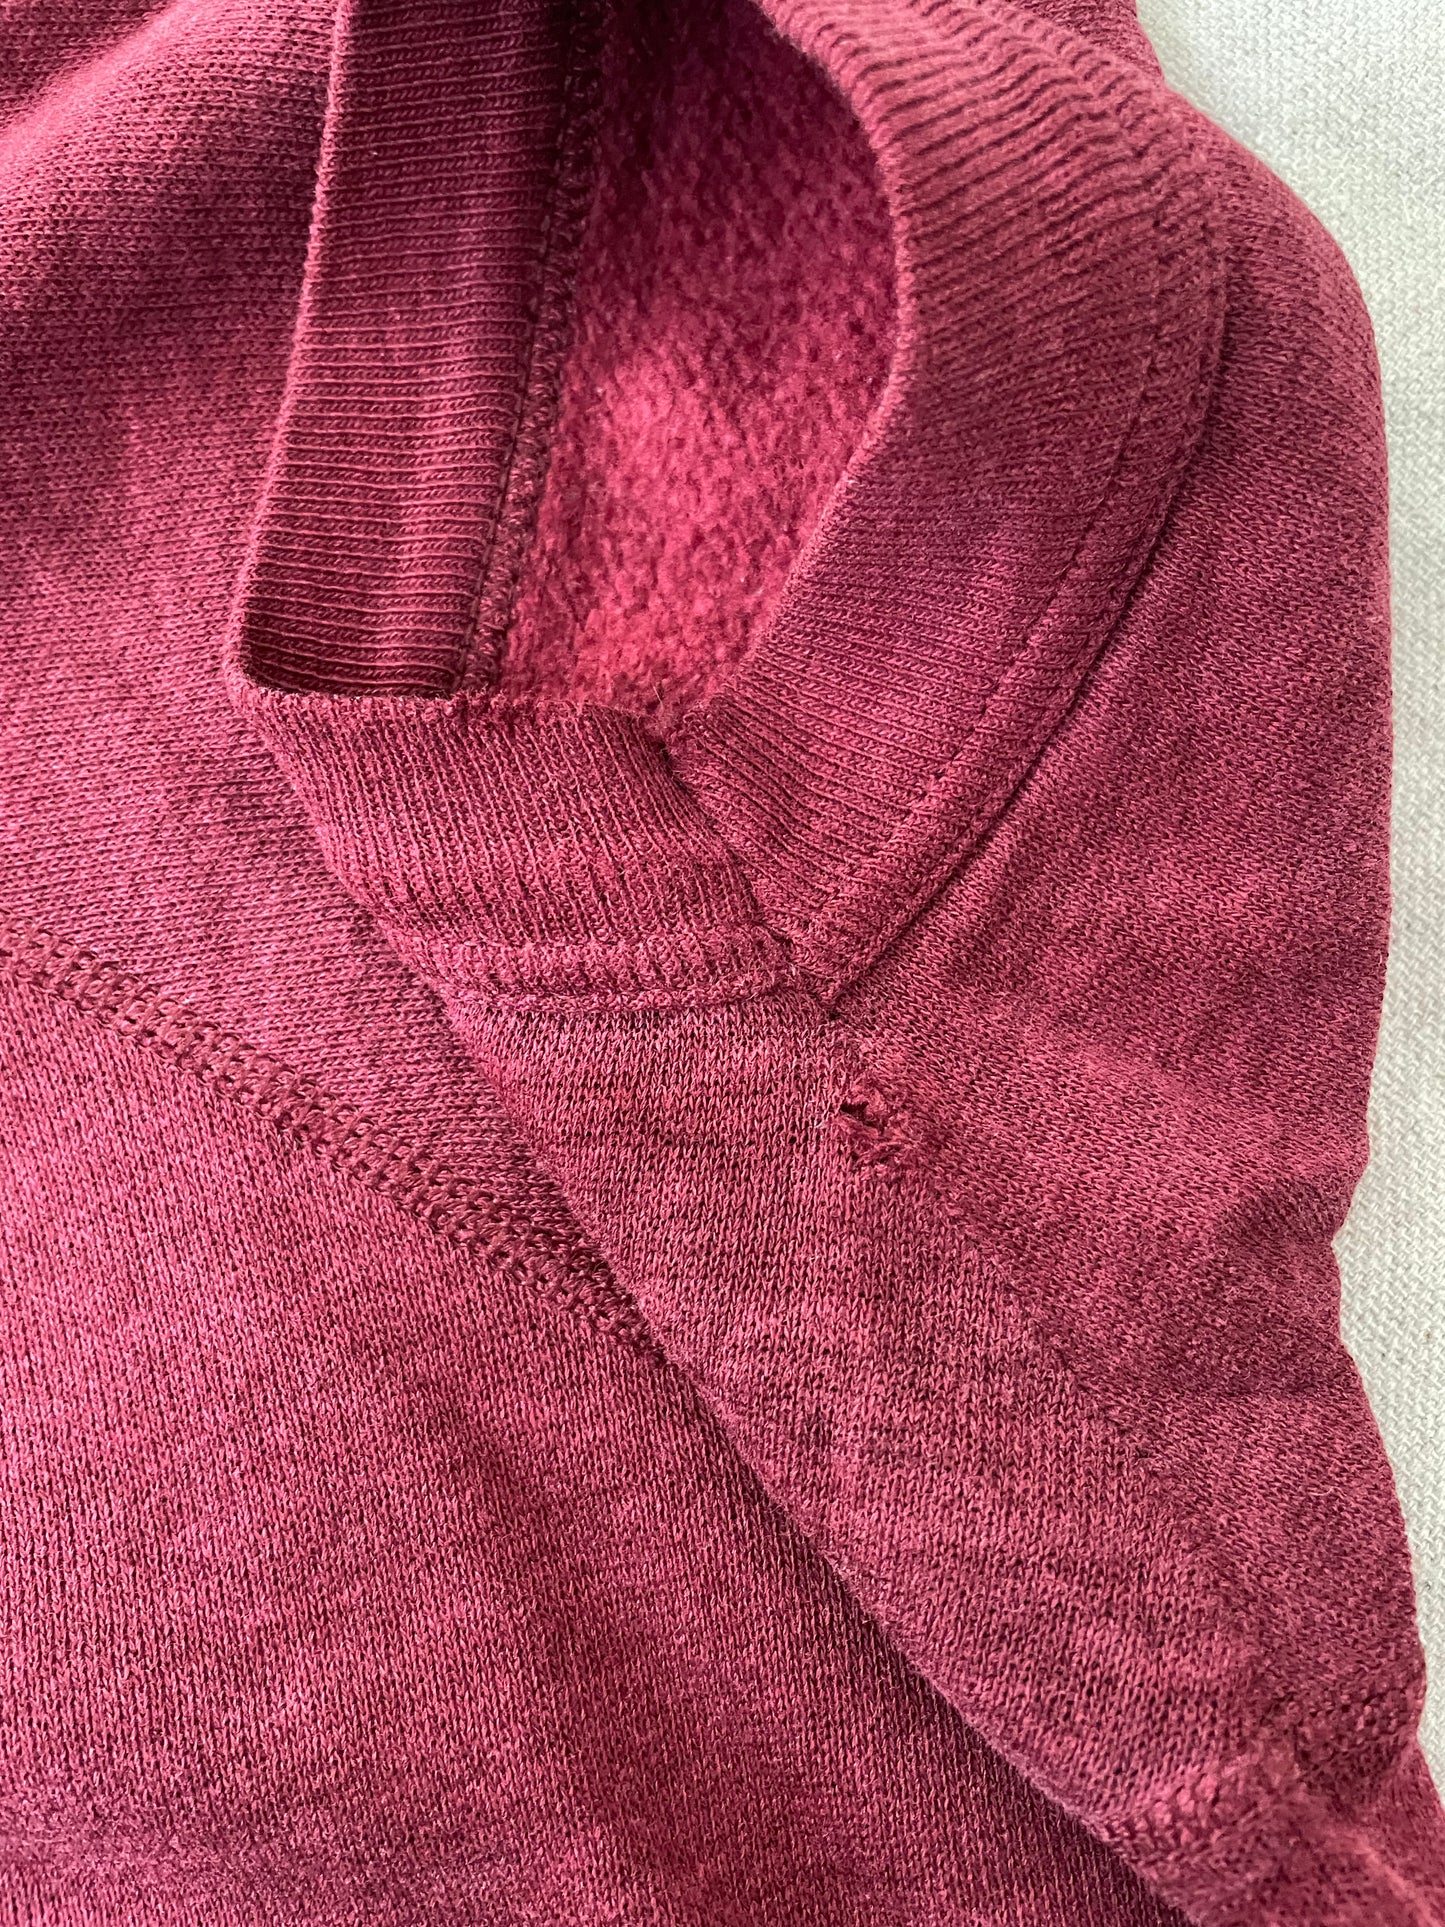 70s/80s Blank Maroon Short Sleeve Sweatshirt